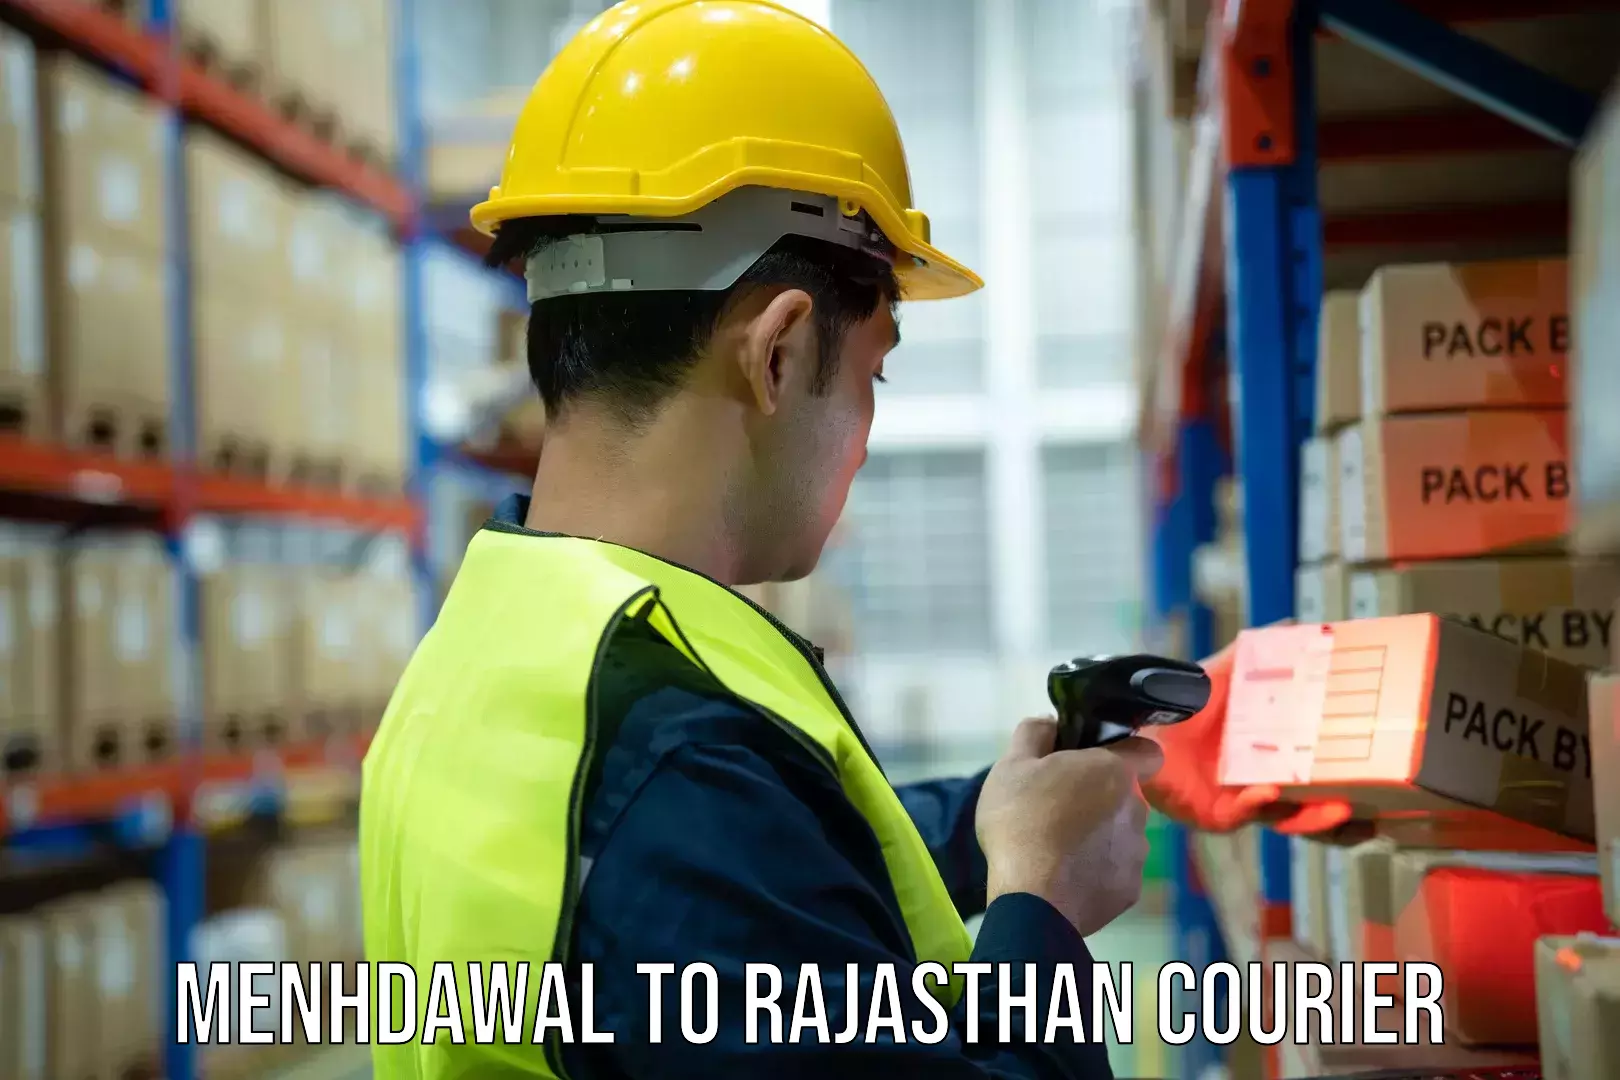 Shipping and handling Menhdawal to Rajasthan